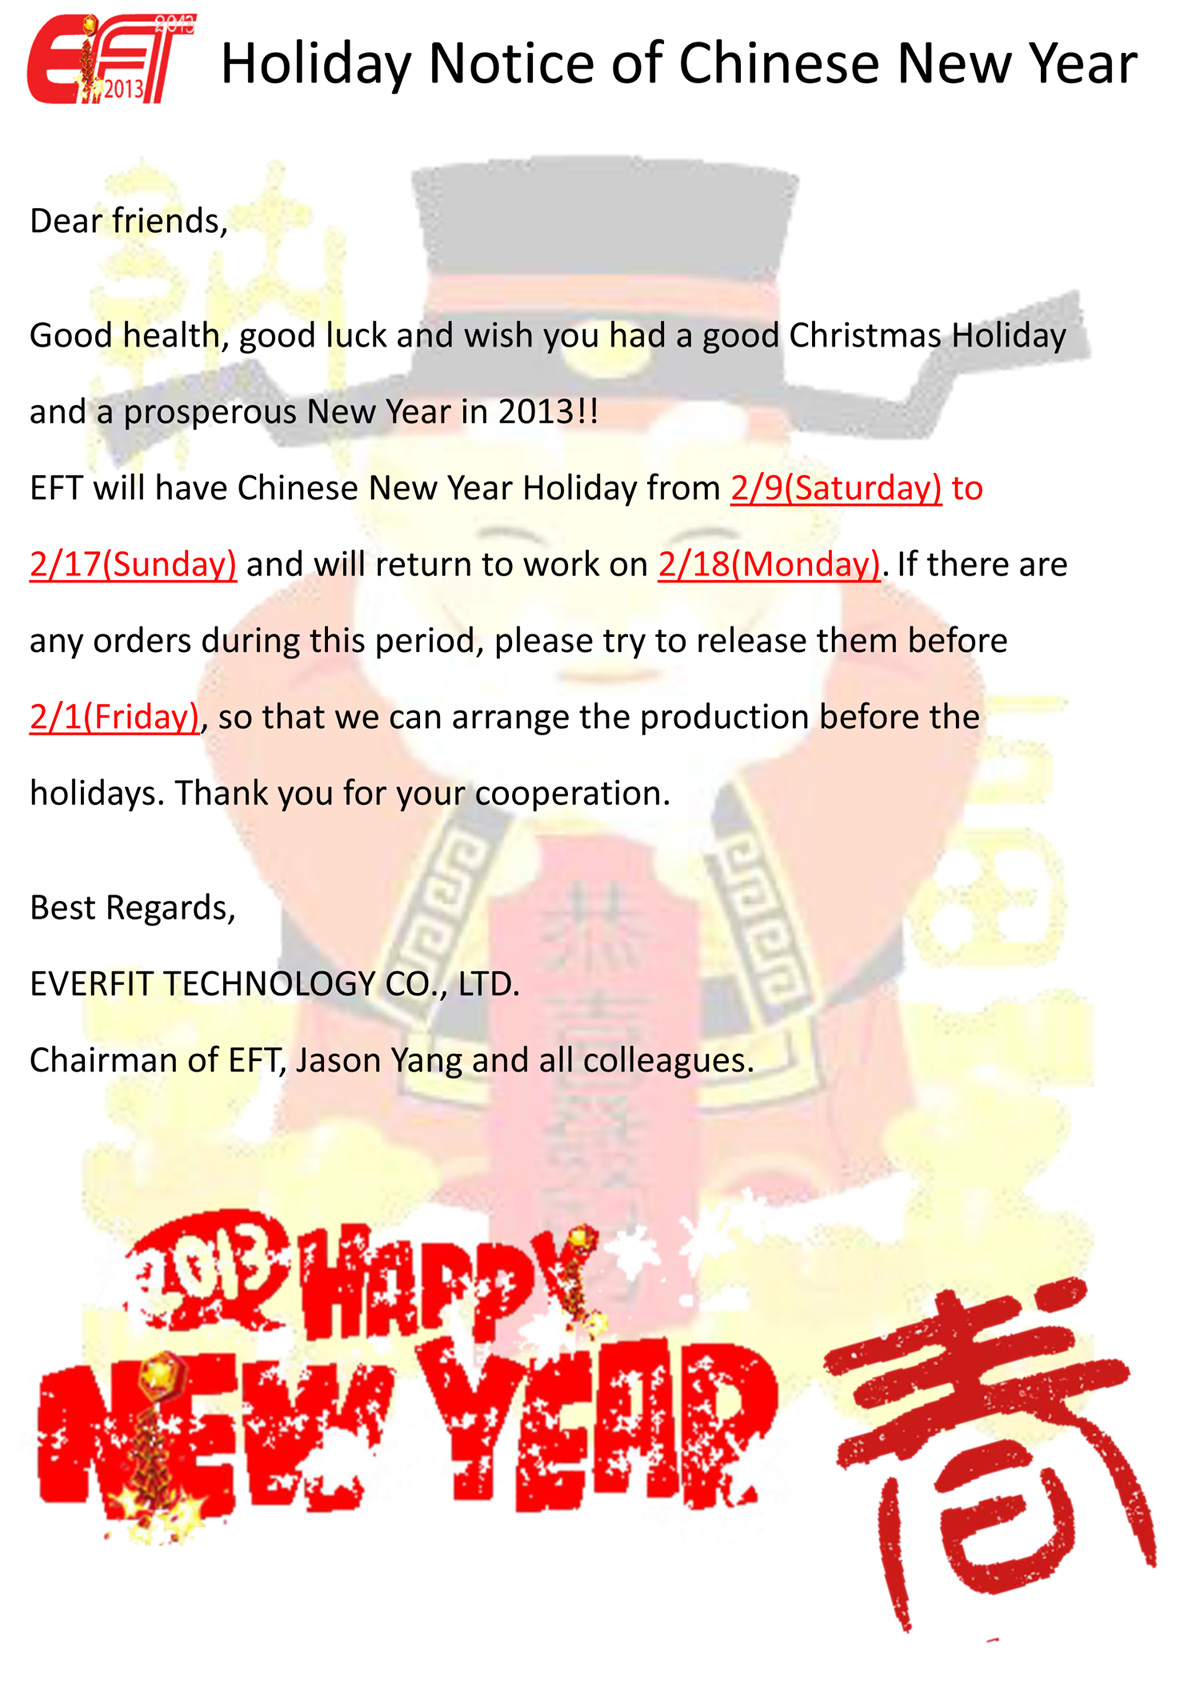 चीनी नए साल की छुट्टी की सूचना